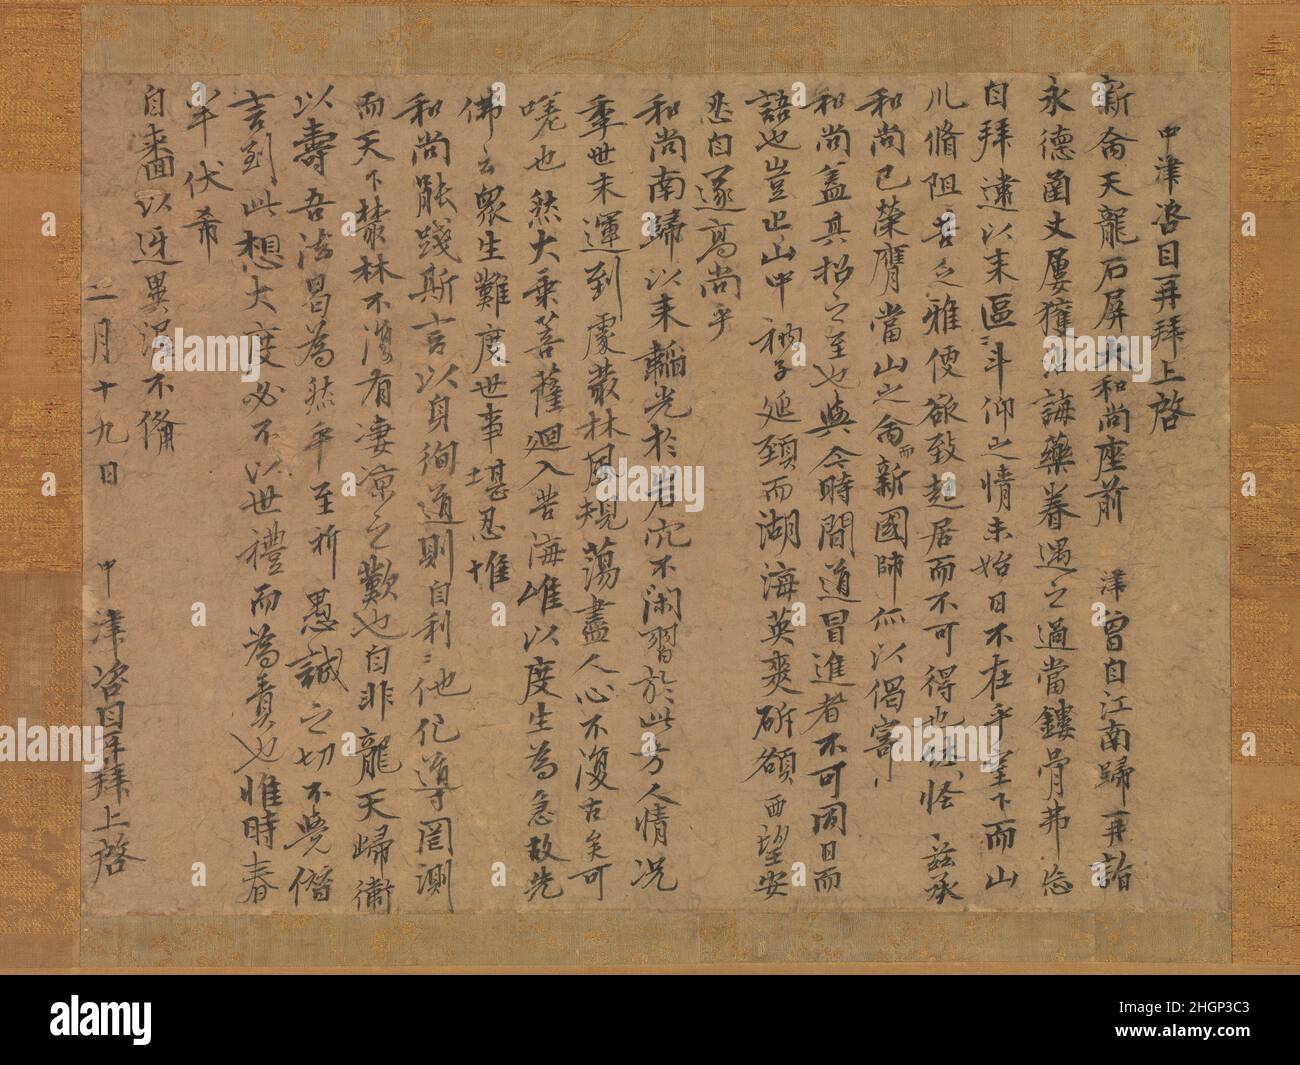 Brief an den Mönch Sekibyō 14th. Jahrhundert Zekkai Chūshin dieser Brief wurde von Zekkai Chūshin geschrieben, einem Rinzai Zen Mönch, der sowohl Tōjiji als auch Shōkokuji Tempel als Abt diente. Es ist in zwanzig Zeilen geschrieben, datiert auf den zweiten Monat, den neunzehnten Tag (eines unbestimmten Jahres) und ist an „den großen Mönch Sekibyō gerichtet.“ Beginnend mit einem blumigen Gruß „Chūshin grüßt Sie erneut mit Respekt und bittet um Schreiben“, beglückwünscht er den Adressaten zu seiner Ernennung zum Abbakt von Tenryūji, Kyoto, einem der renommiertesten Zen-Tempel in Japan. Der Brief wird mit sorgfältig durchgeführten Pinselstrichen geschrieben Stockfoto